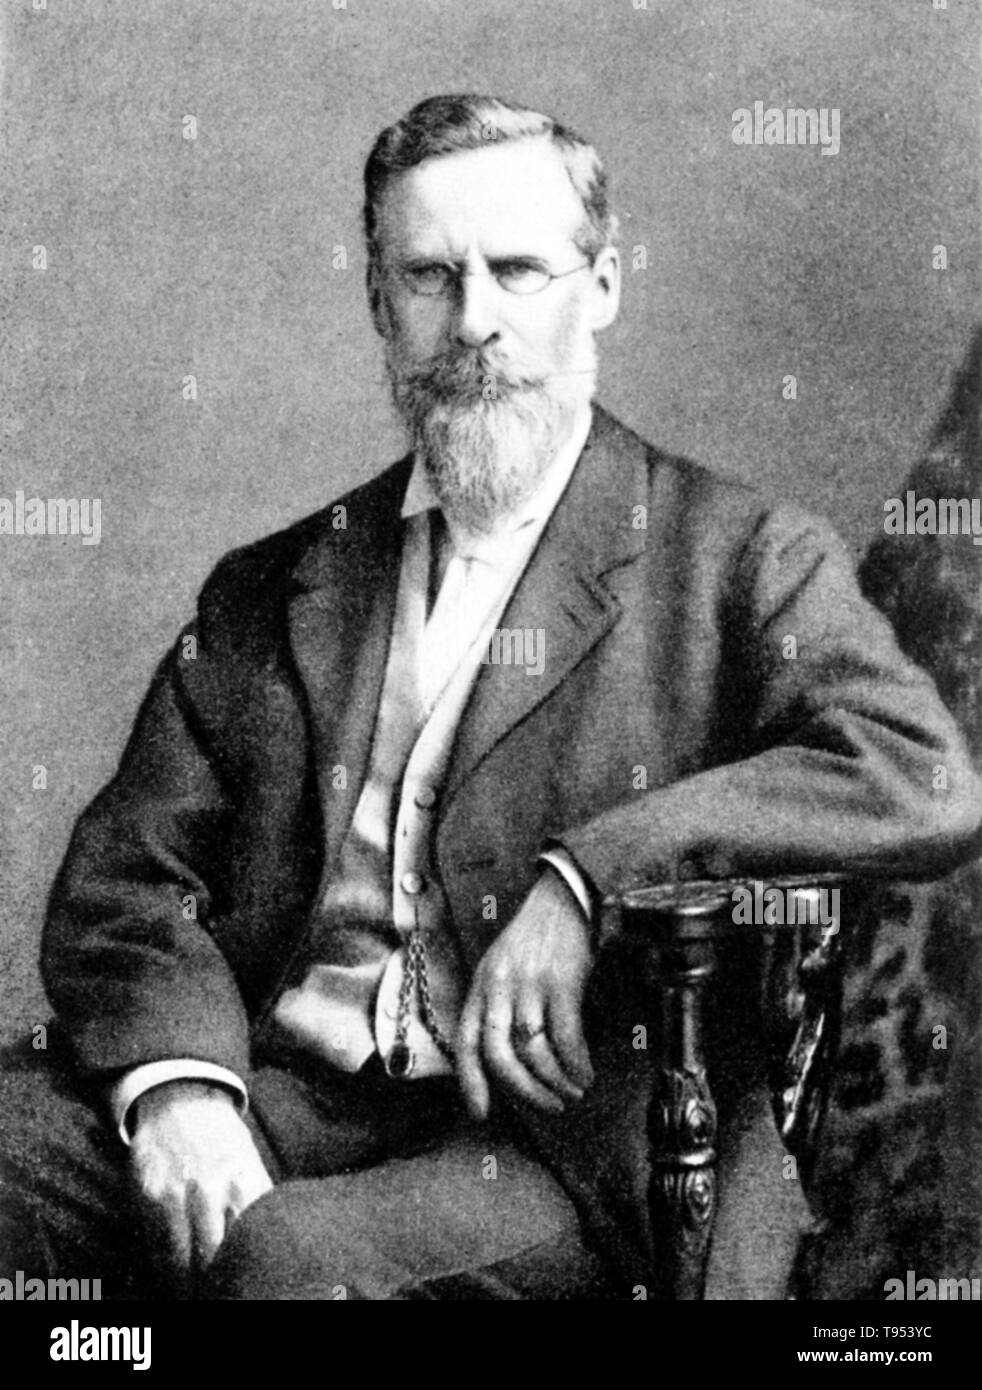 William Crookes (17 juin 1832 - 4 avril 1919) était un physicien et chimiste anglais, spectroscopie. En 1861, il a découvert un élément inconnu auparavant avec une raie d'émission vert clair dans son spectre et nommé l'élément le thallium. En 1895, il a identifié le premier échantillon d'hélium. Banque D'Images